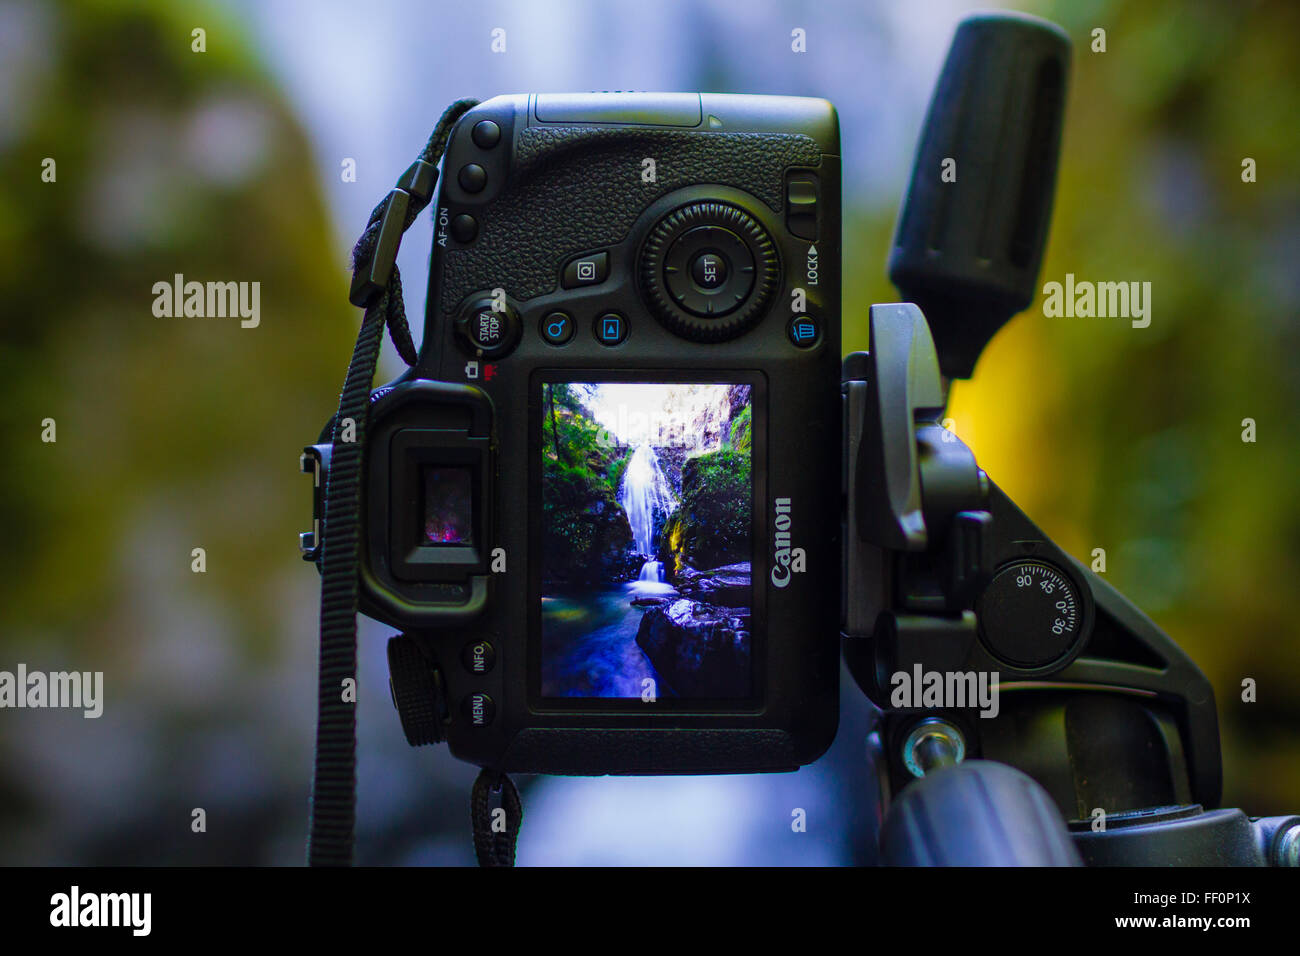 GLIDE, o - Giugno 7, 2015: Canon EOS 6D DSLR telecamera digitale montata su di un cavalletto con una foto di una cascata sullo schermo LCD. Foto Stock